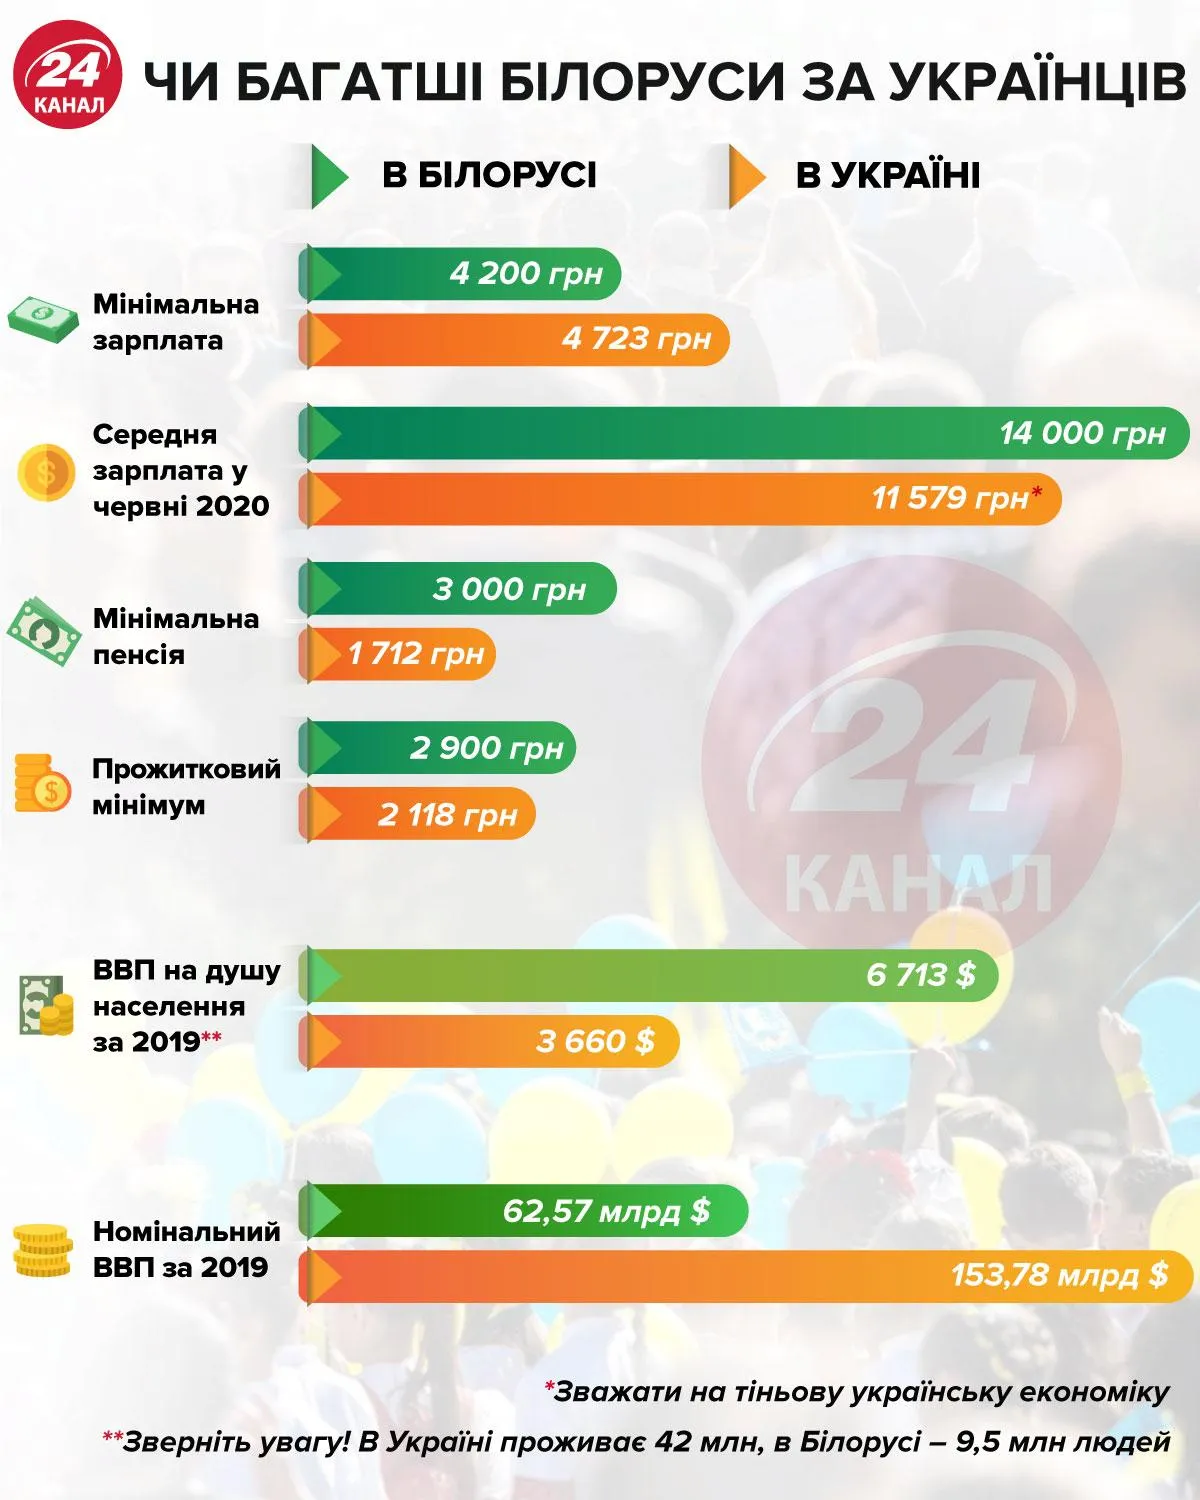 Богаче ли беларсы за украинцев инфографика 24 канал